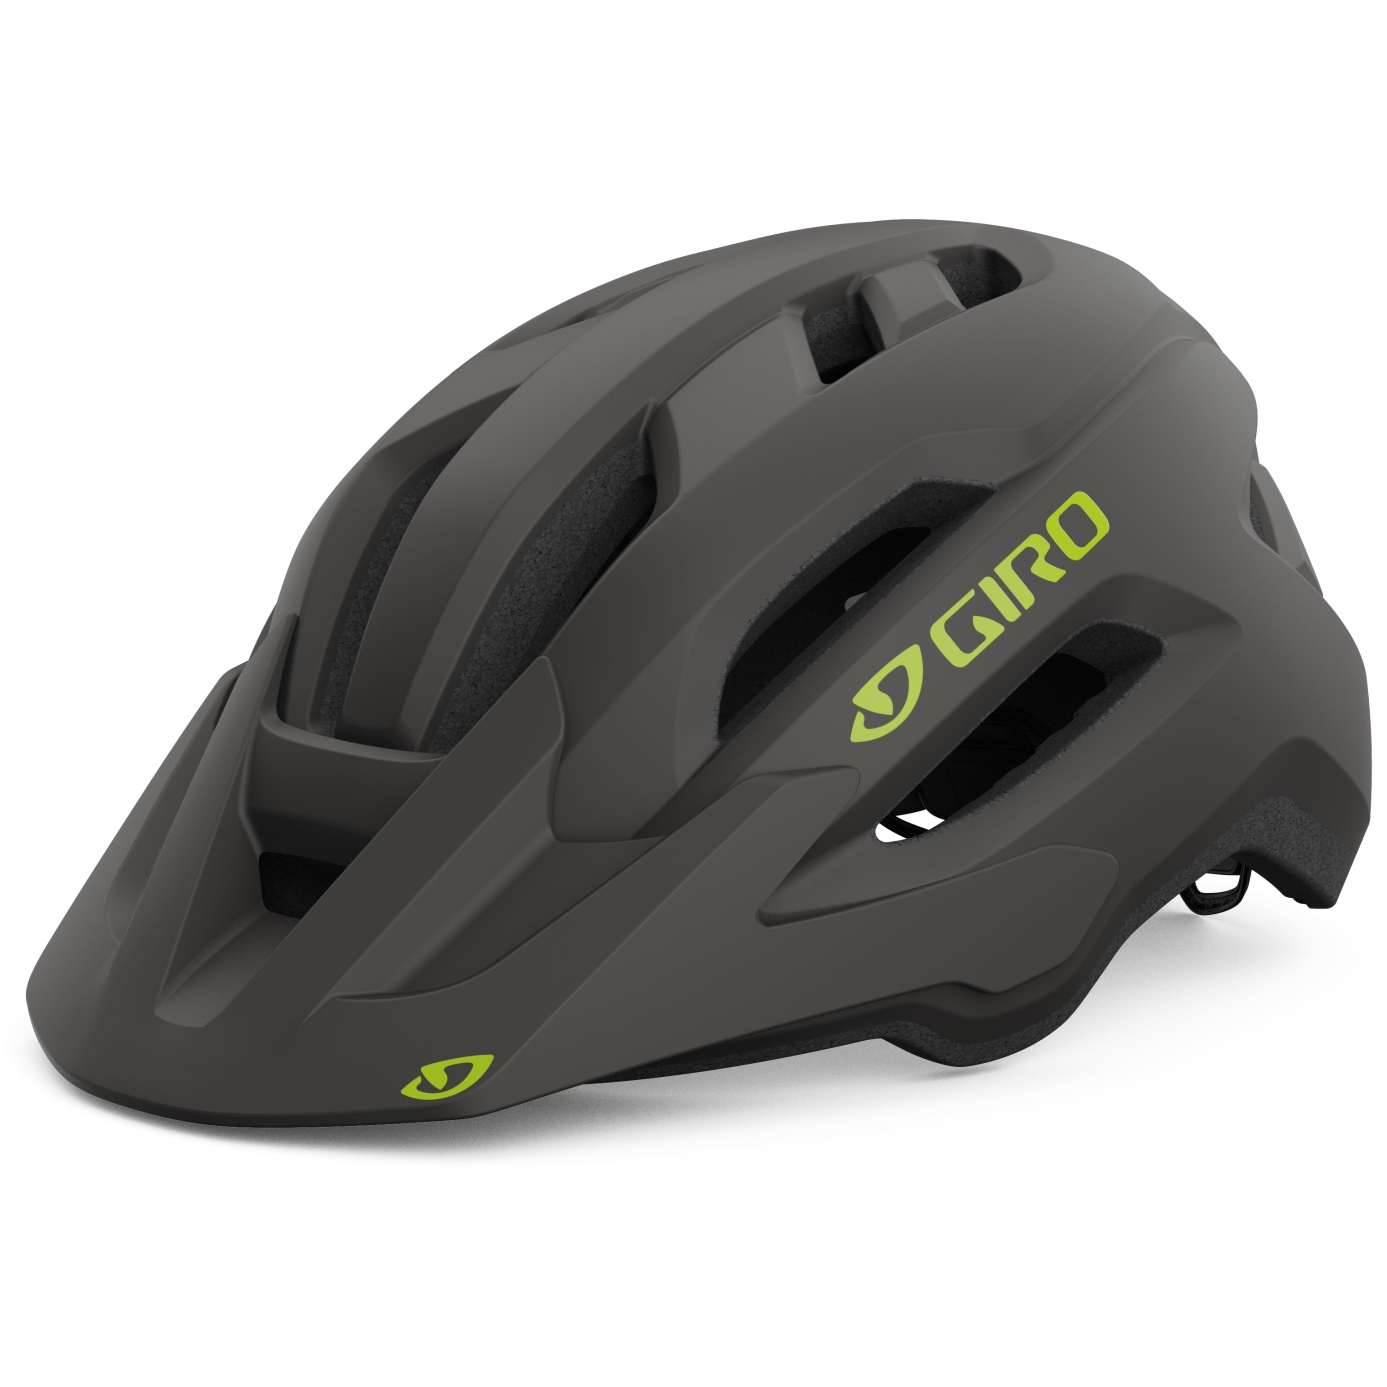 Produktbild von Giro Fixture II Helm - matte warm black